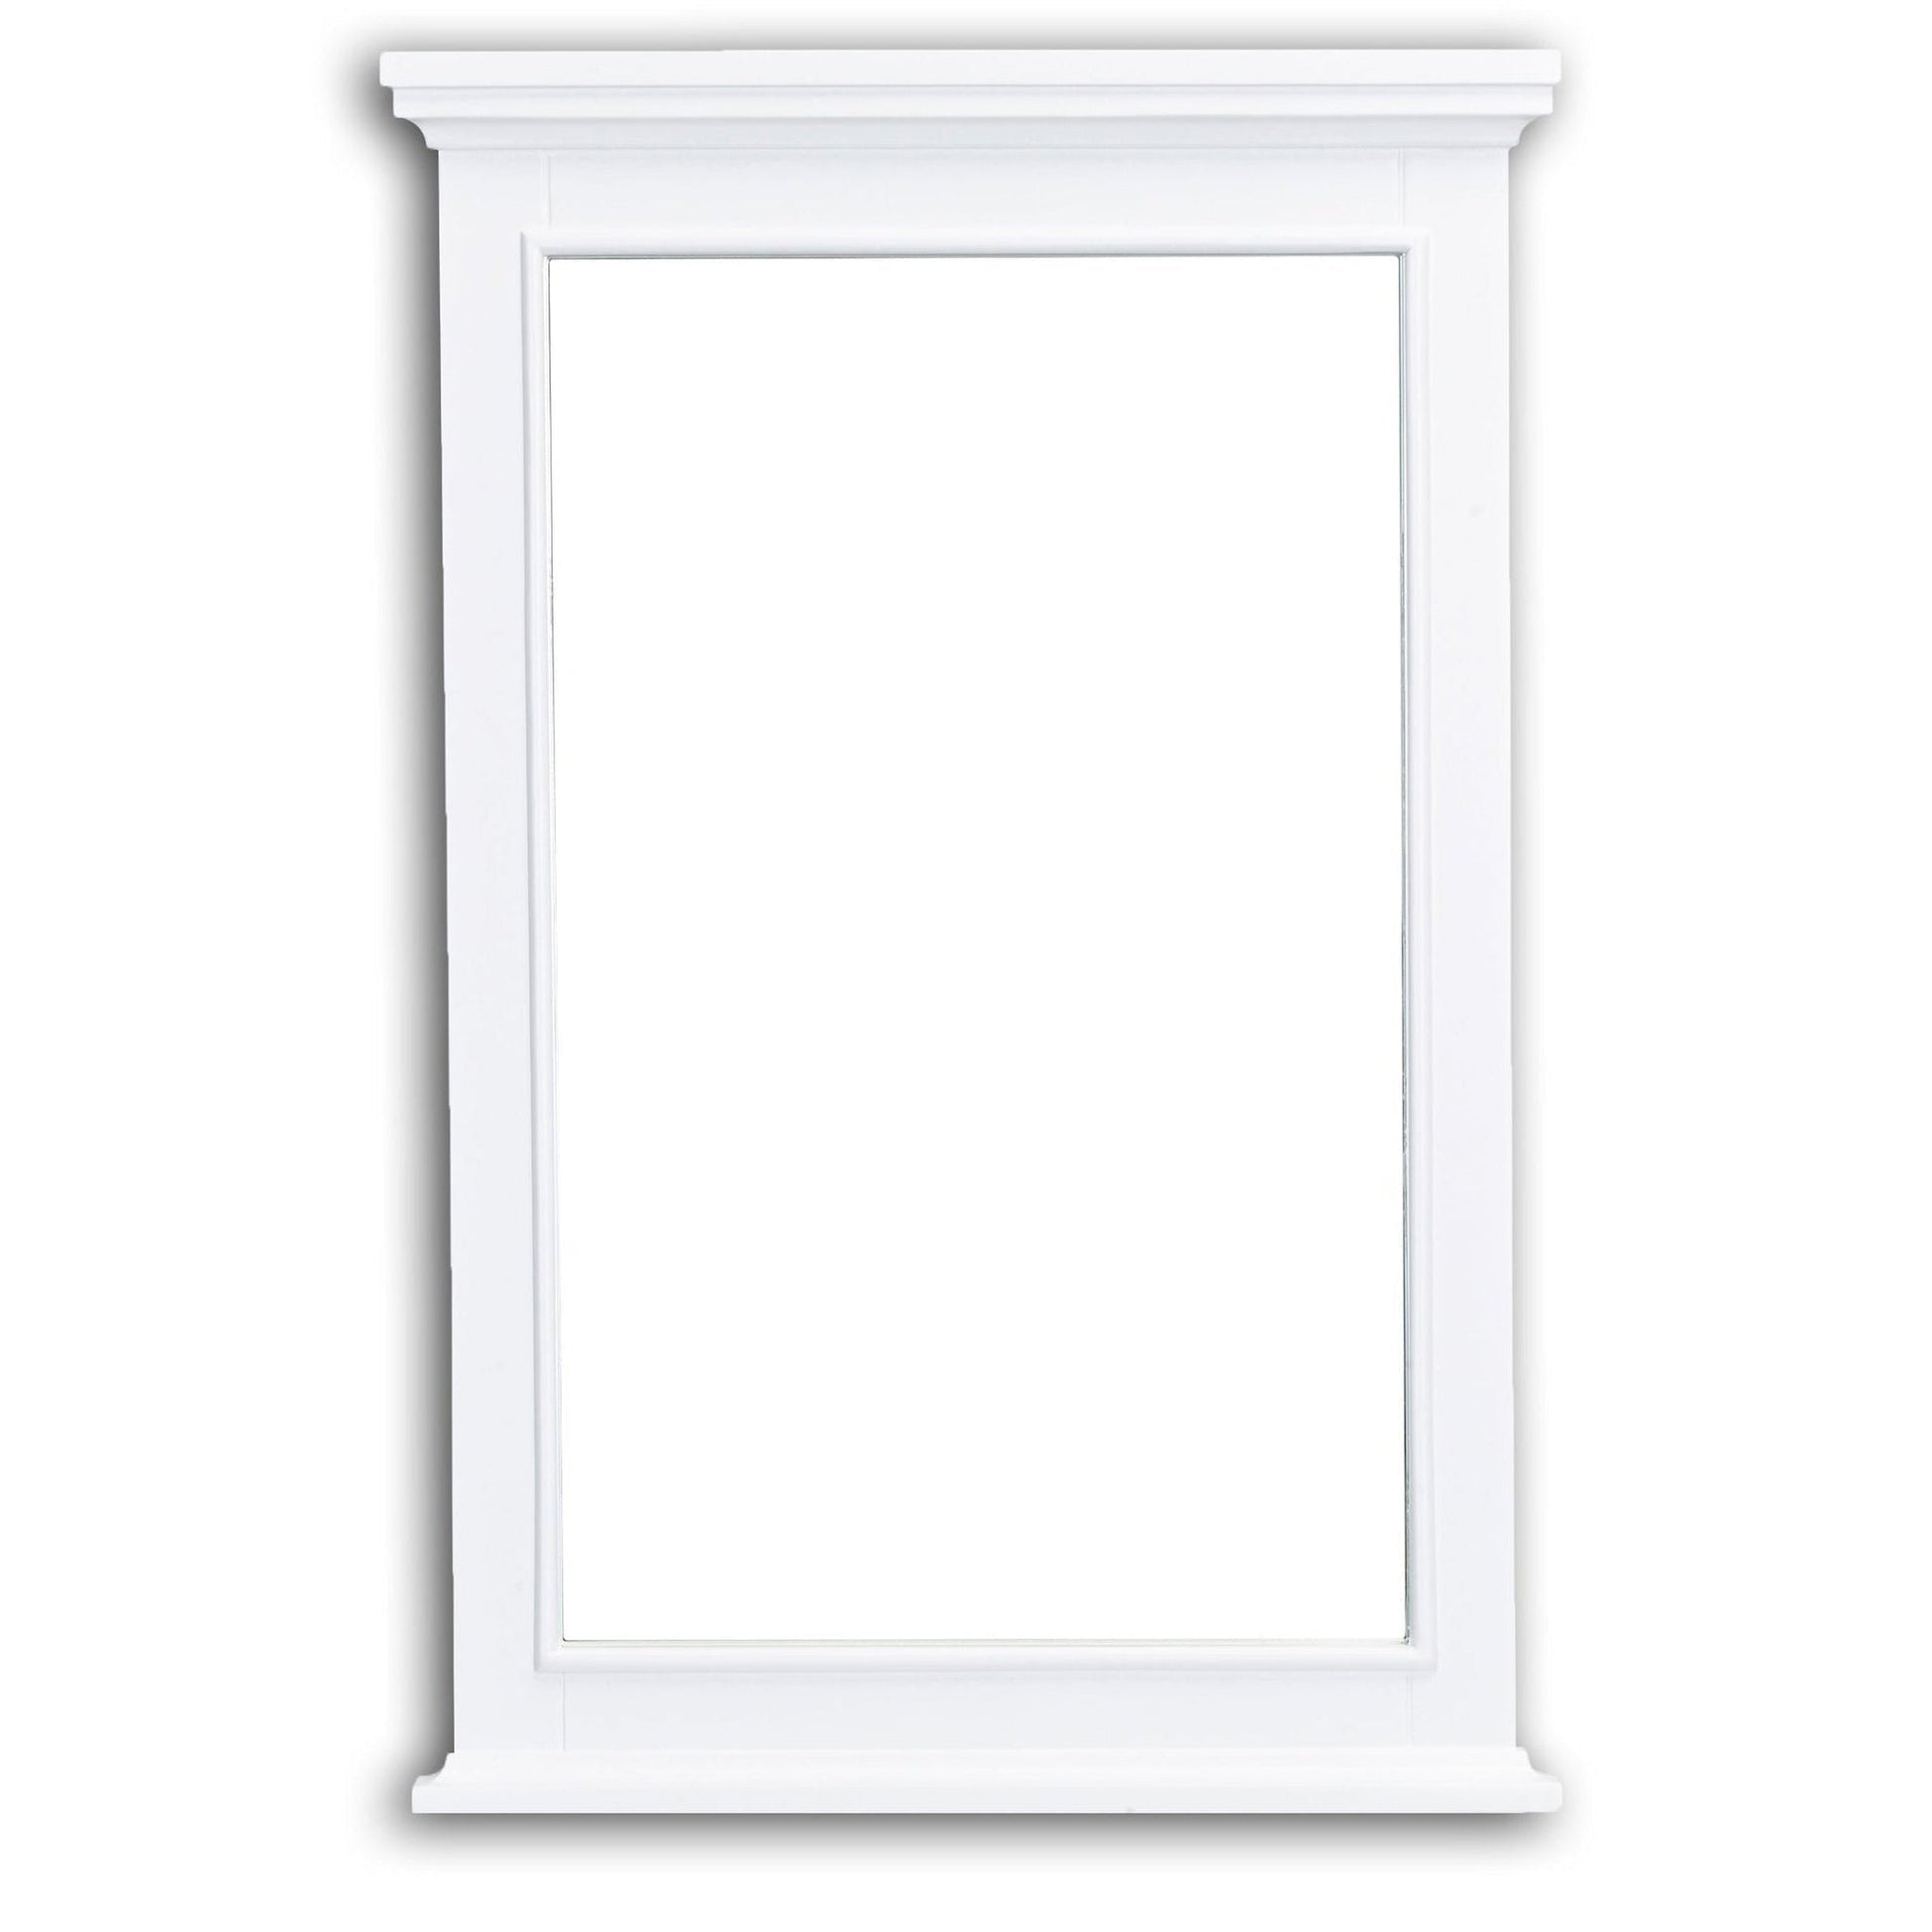 Eviva Elite Stamford 24" x 36" White Full Framed Wall-Mounted Bathroom Mirror